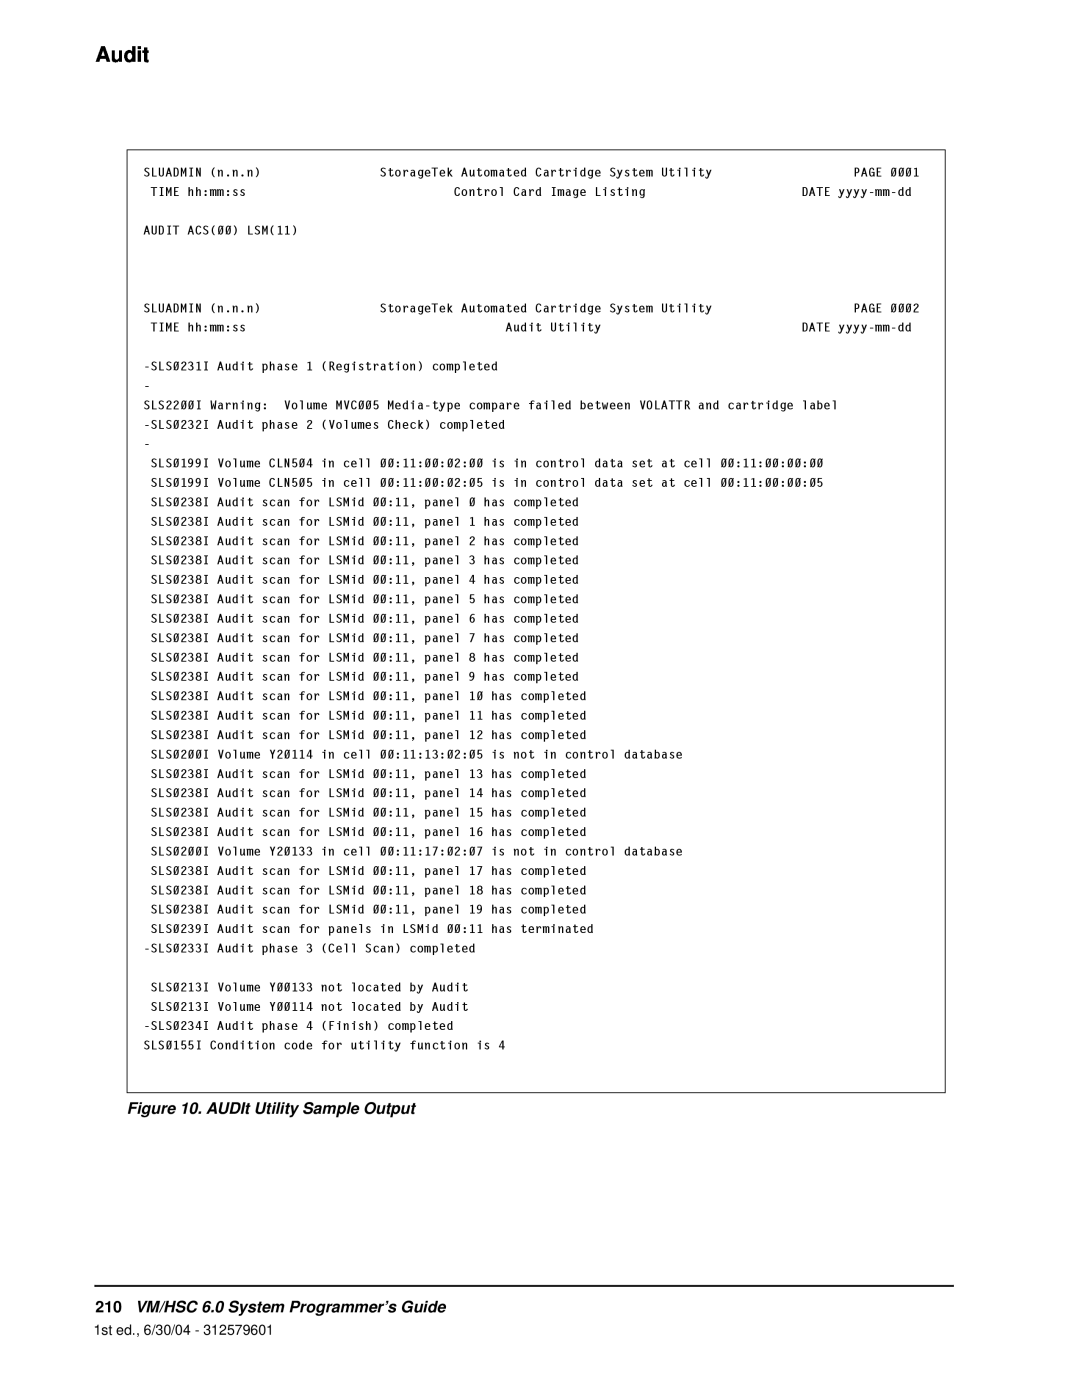 StorageTek manual Audit, AUDIt Utility Sample Output, 210VM/HSC 6.0 System Programmer’s Guide, 1st ed., 6/30/04 